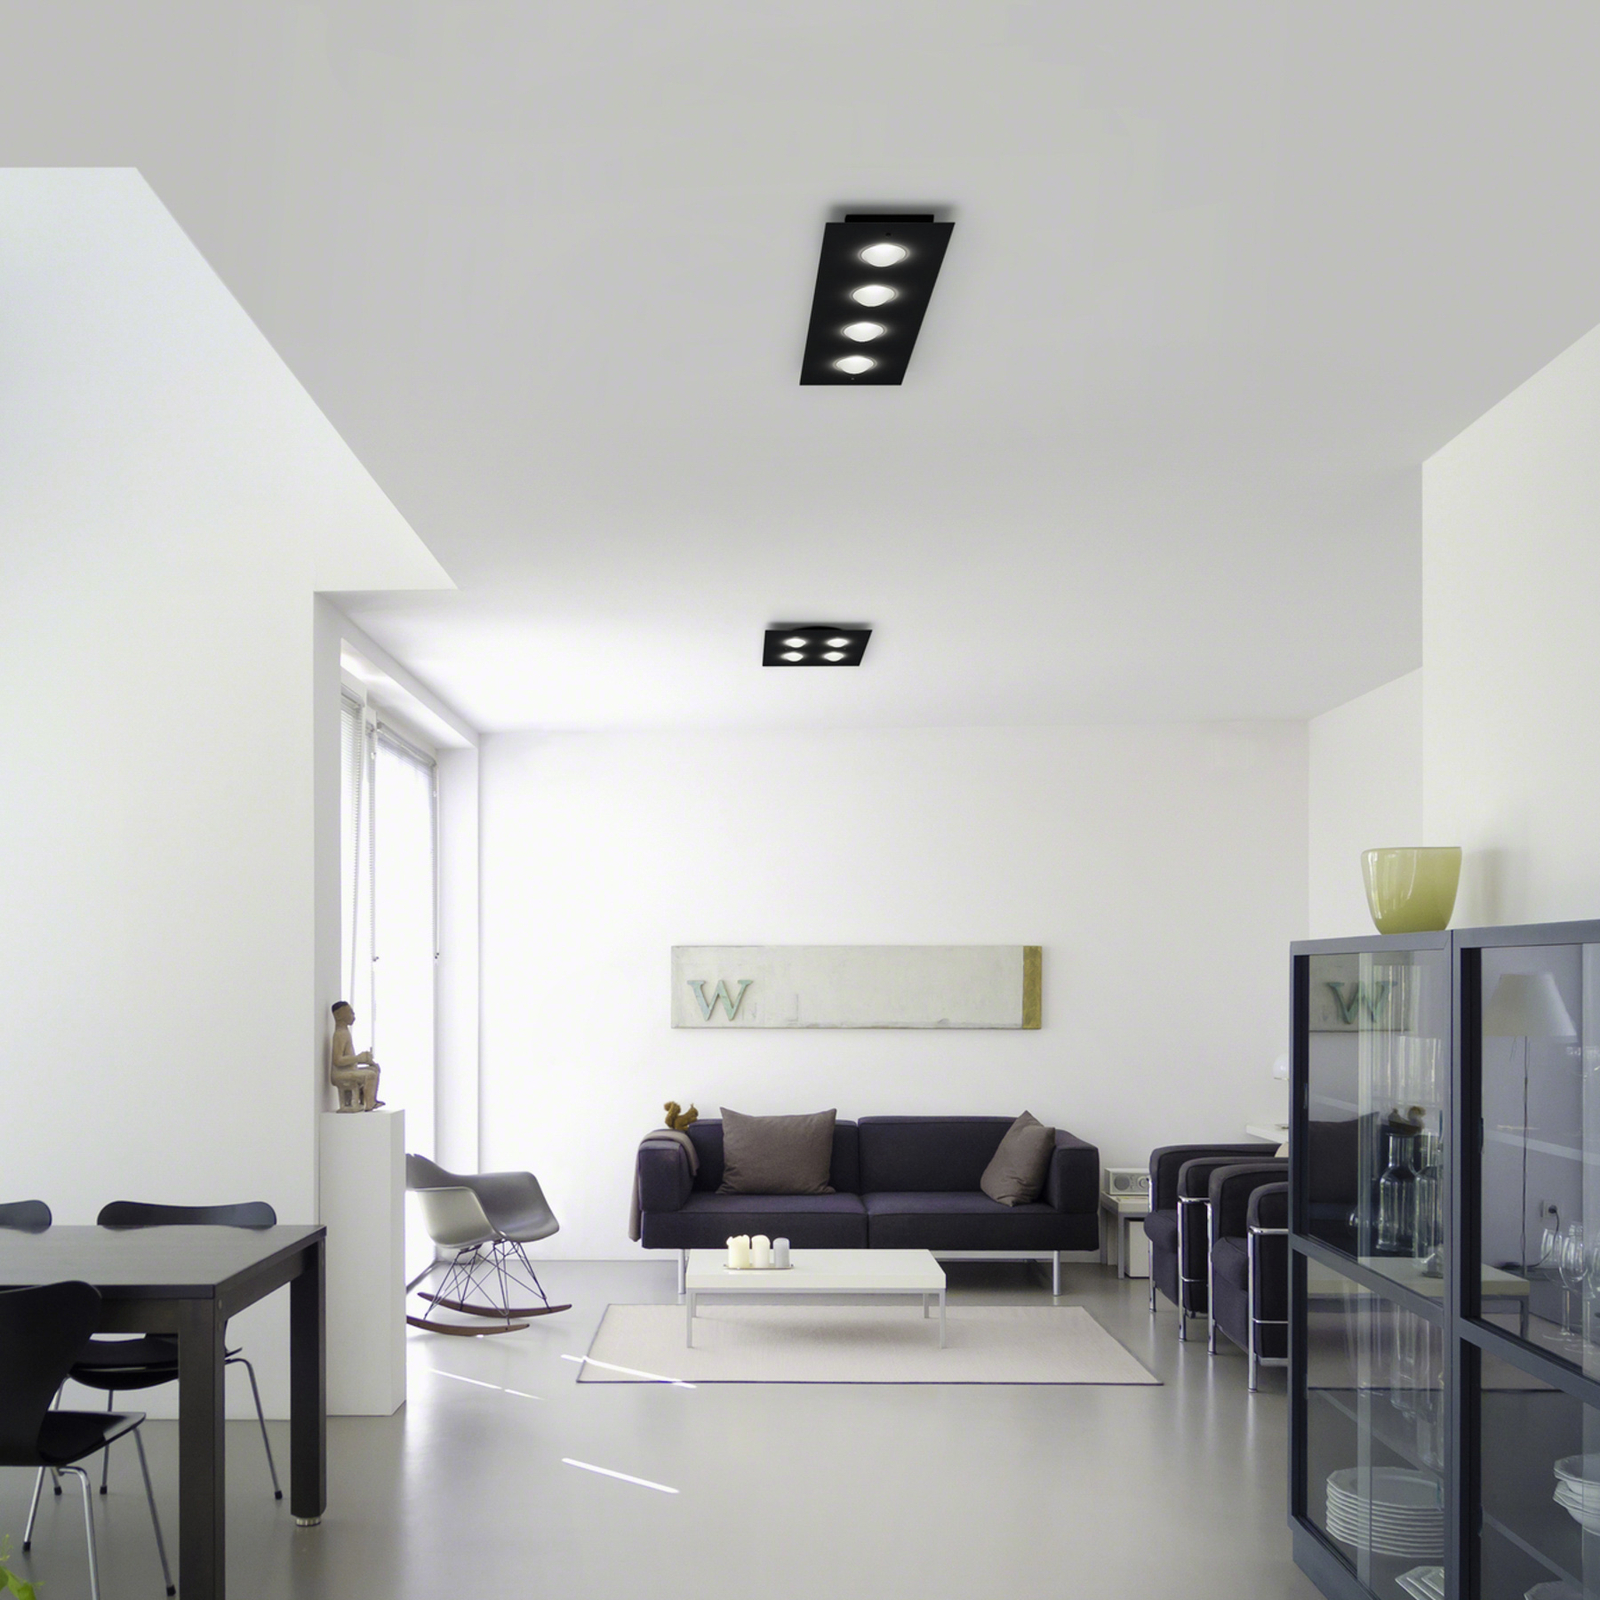 Helestra Nomi LED svetlo 75x21 cm stmieva čierna